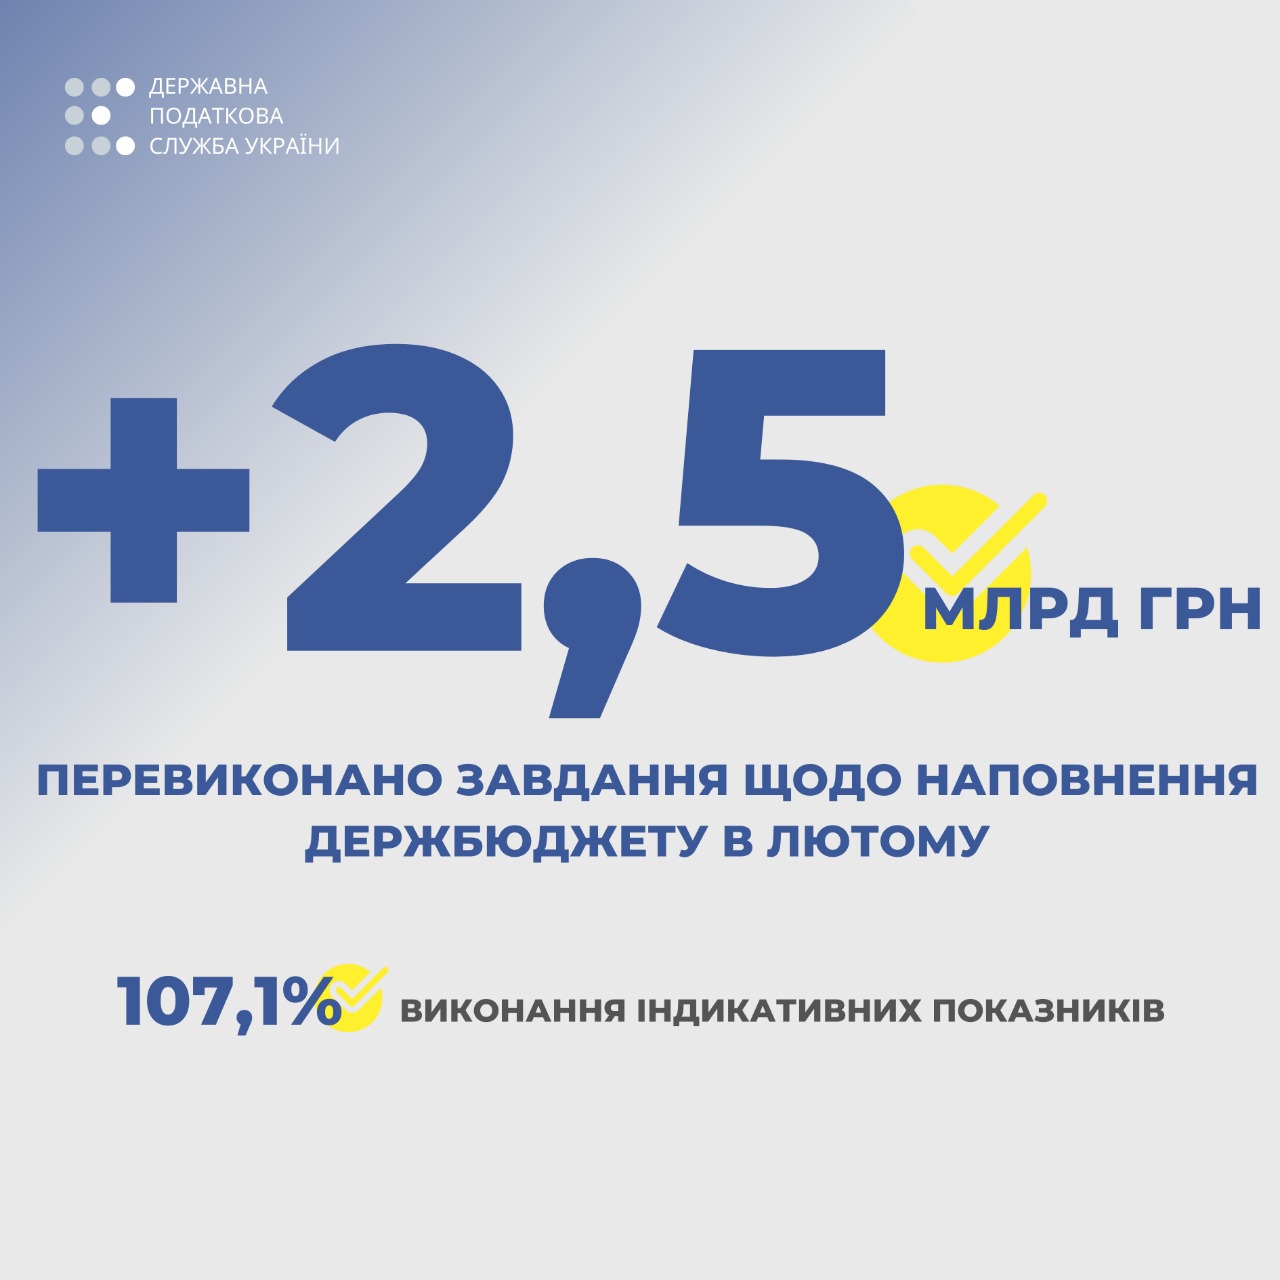 Верланов: у лютому податкова перевиконала план на 2,5 млрд грн